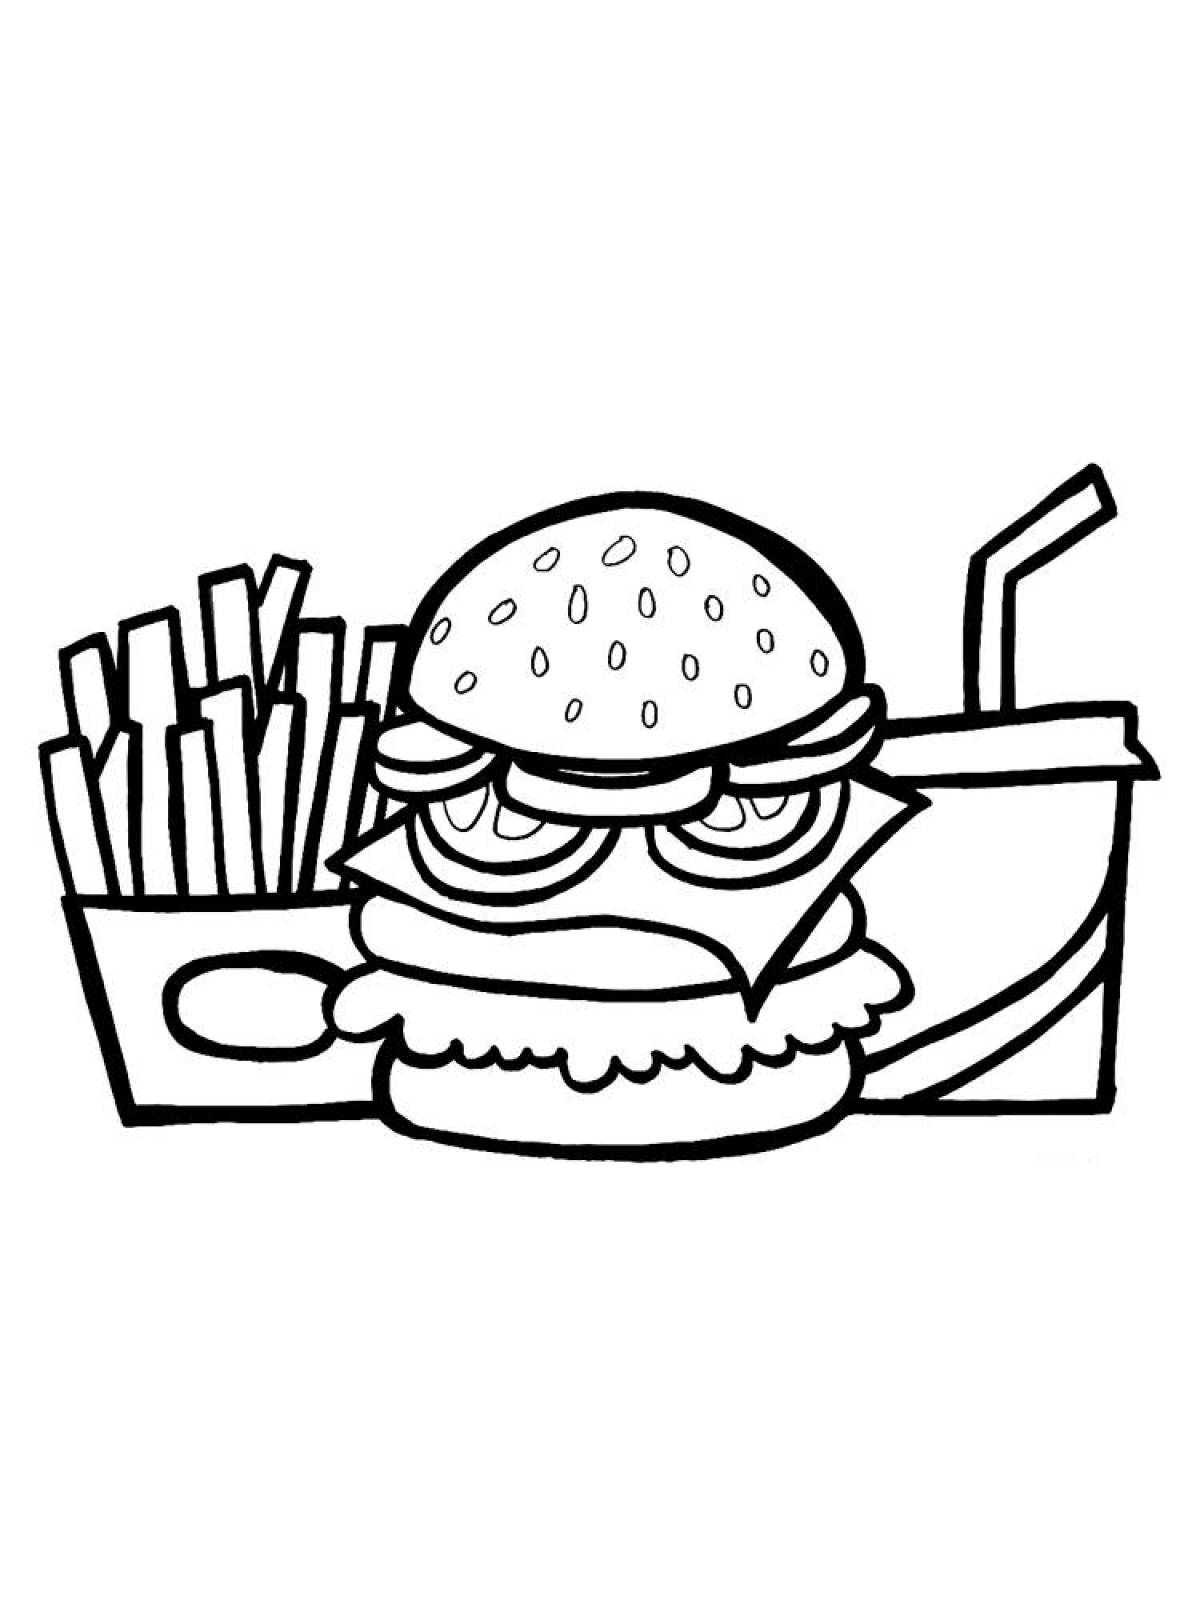 Delicious burger coloring page